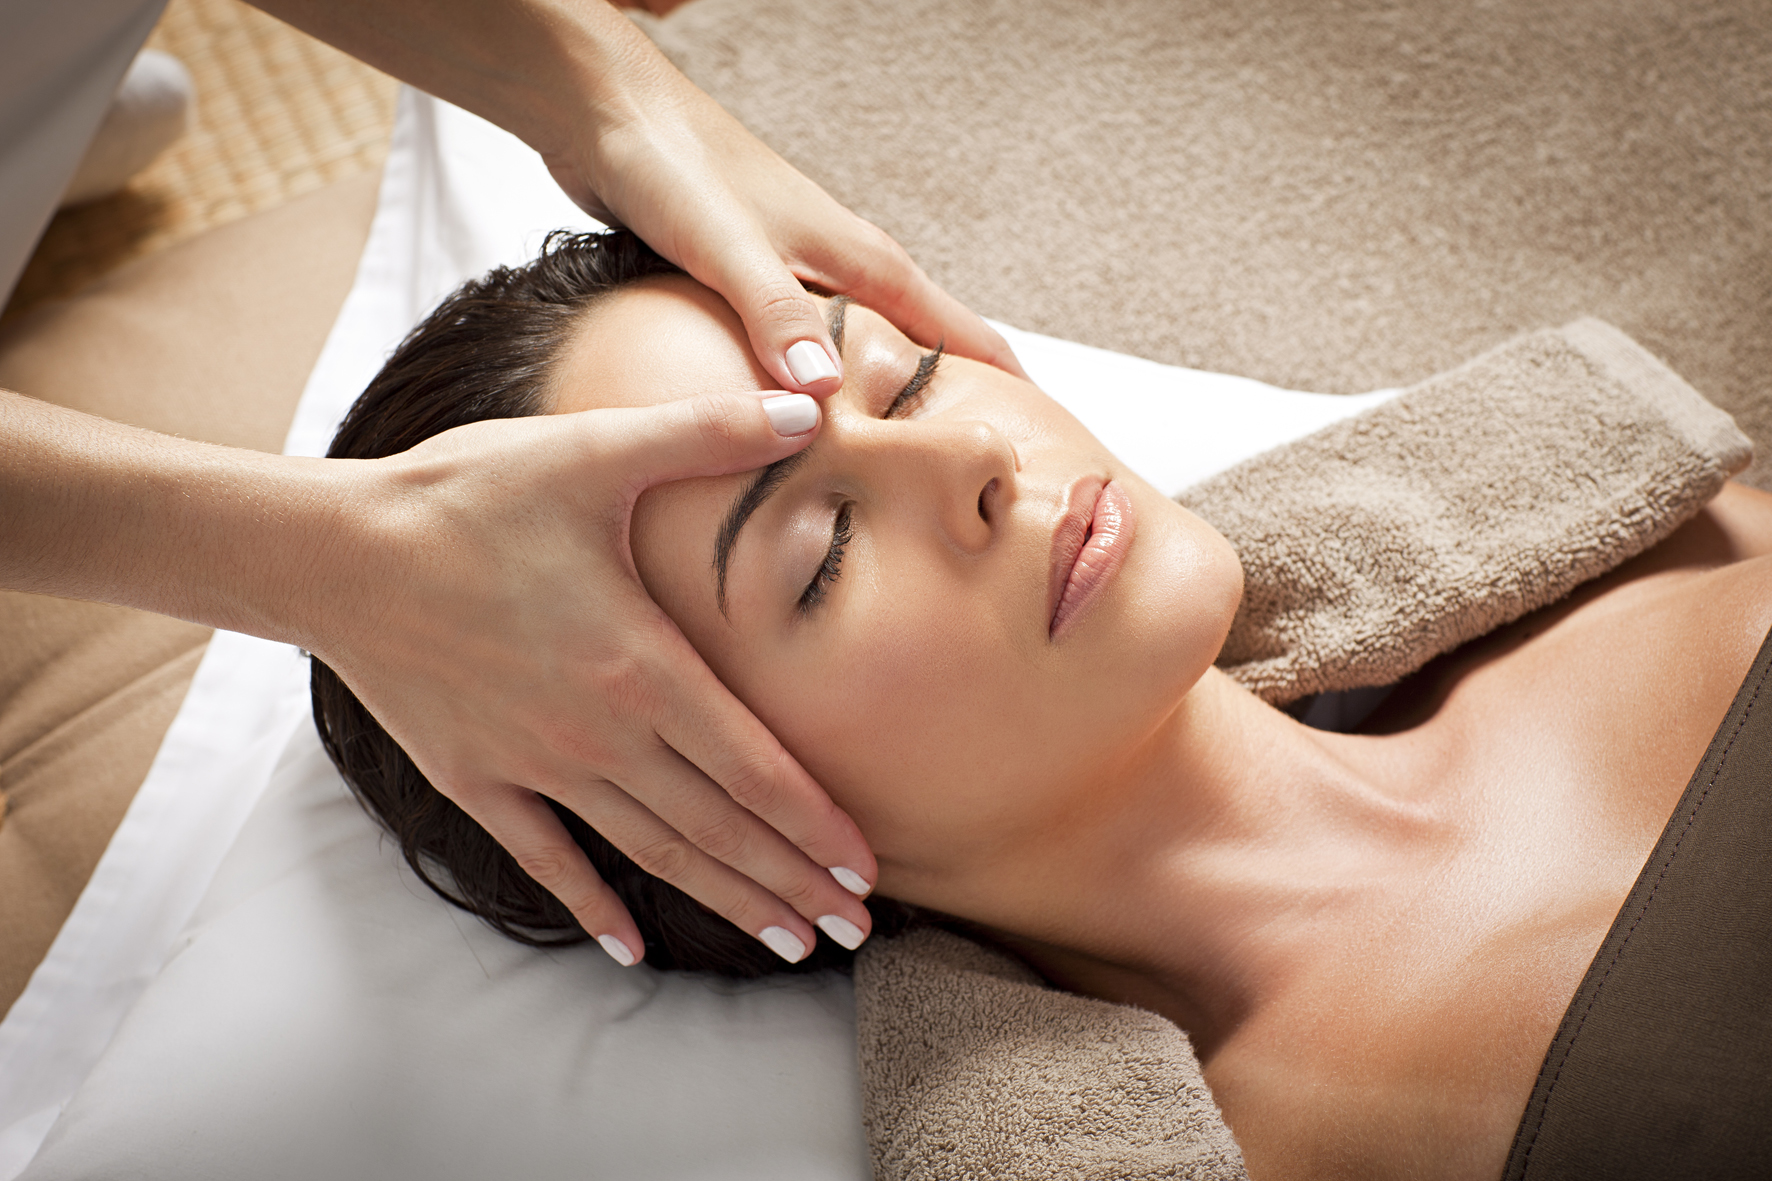 Massage mặt giúp máu lưu thông và kích thích sản xuất collagen